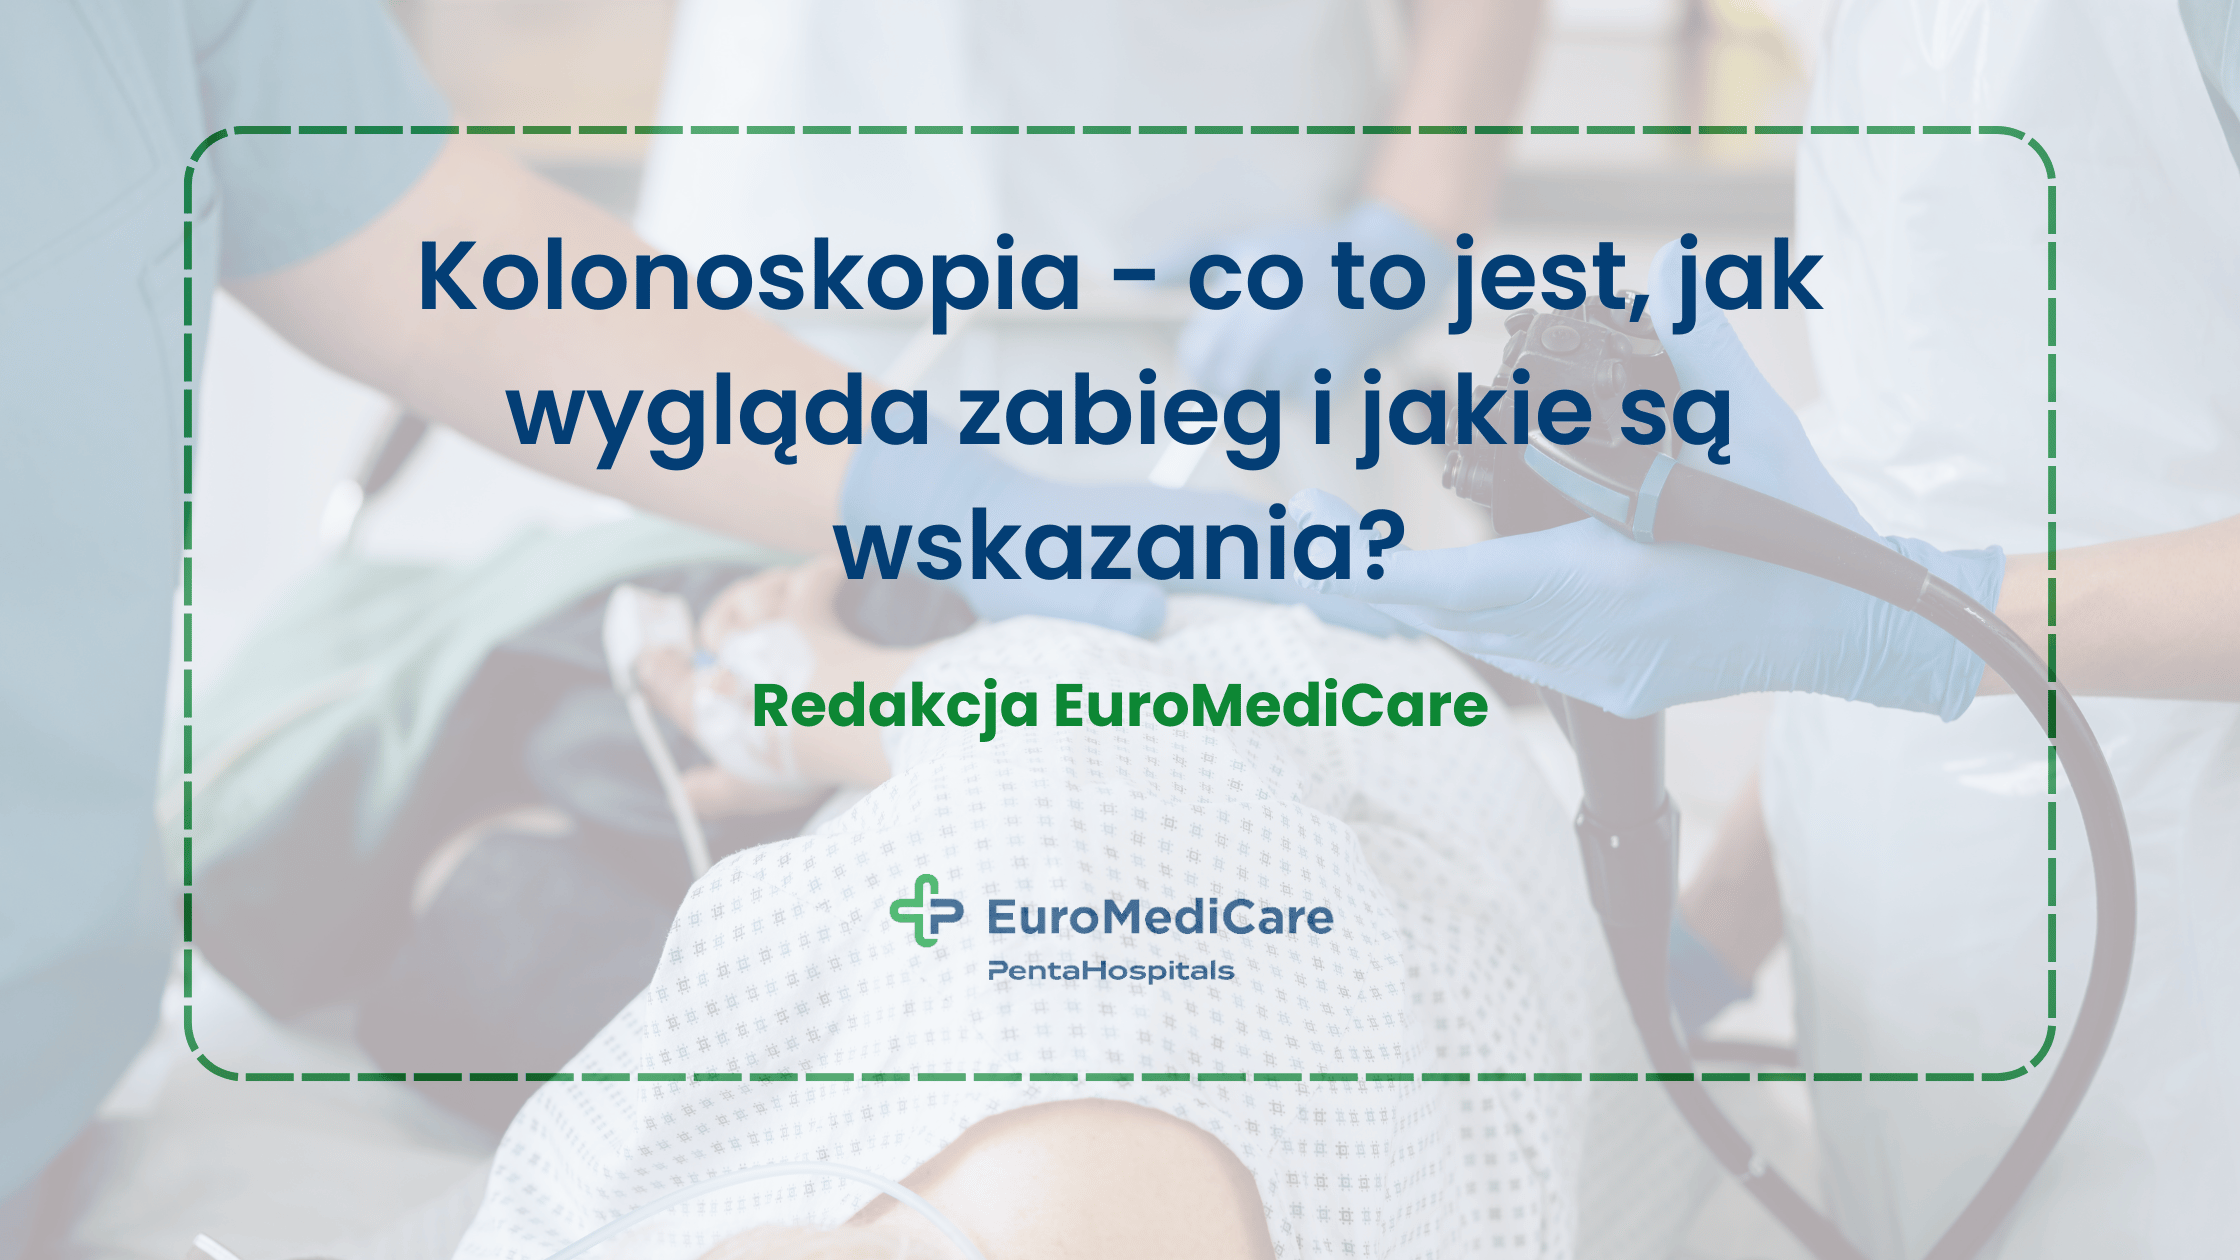 Kolonoskopia - co to jest, jak wygląda zabieg i jakie są wskazania? - blog euromedicare.pl